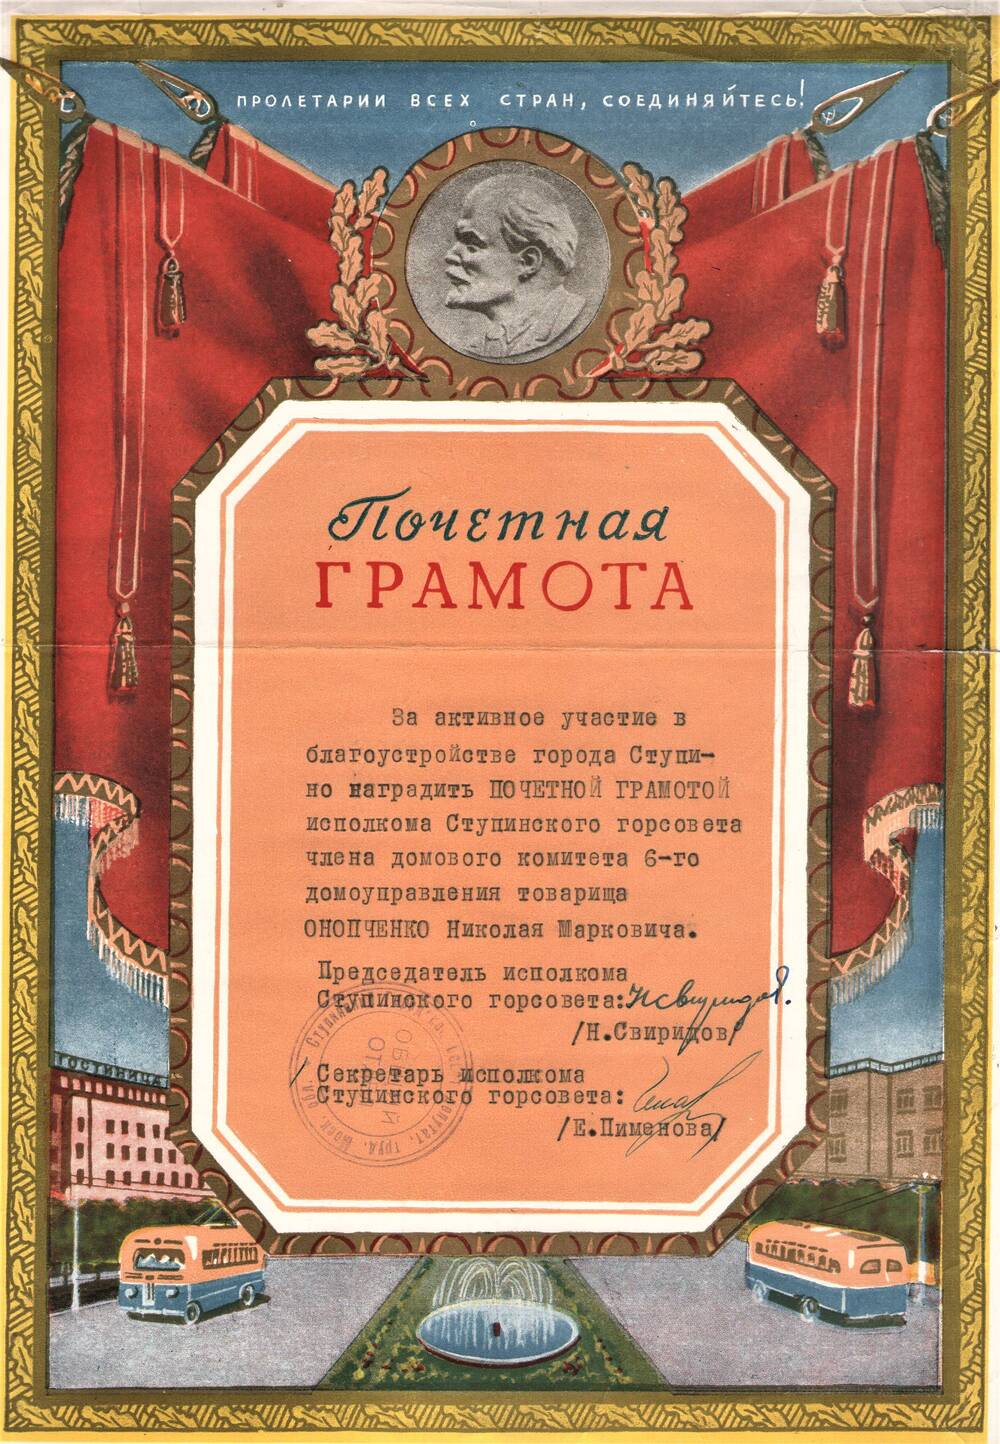 Почетная грамота Онопченко Н.М. за активное участие в благоустройстве города Ступино